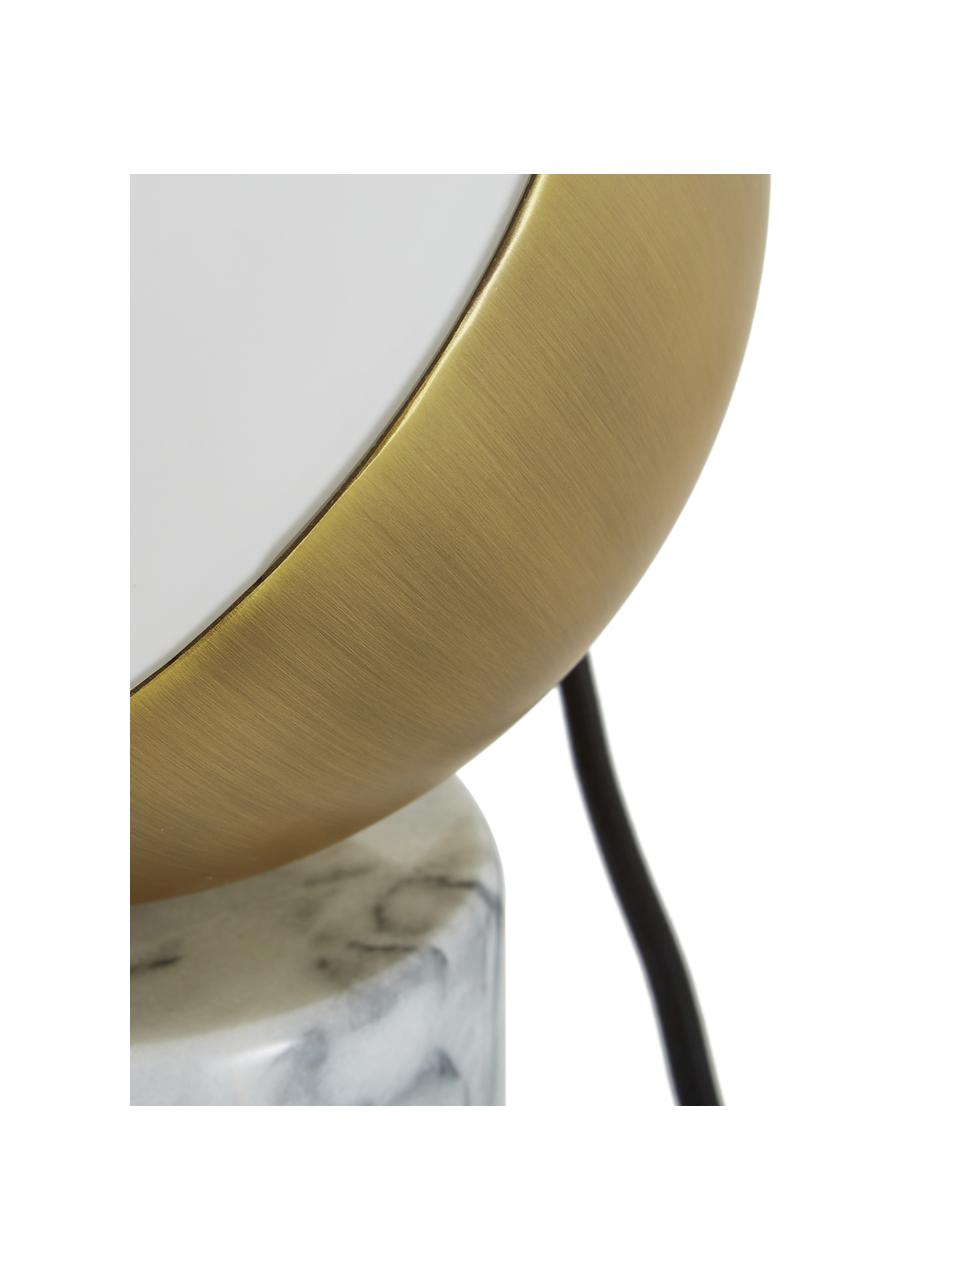 Marmor-Tischlampe Svea, Lampenschirm: Metall, Glas, Lampenfuss: Weisser MarmorLampenschirm: Weiss, Goldfarben, Ø 15 x H 25 cm